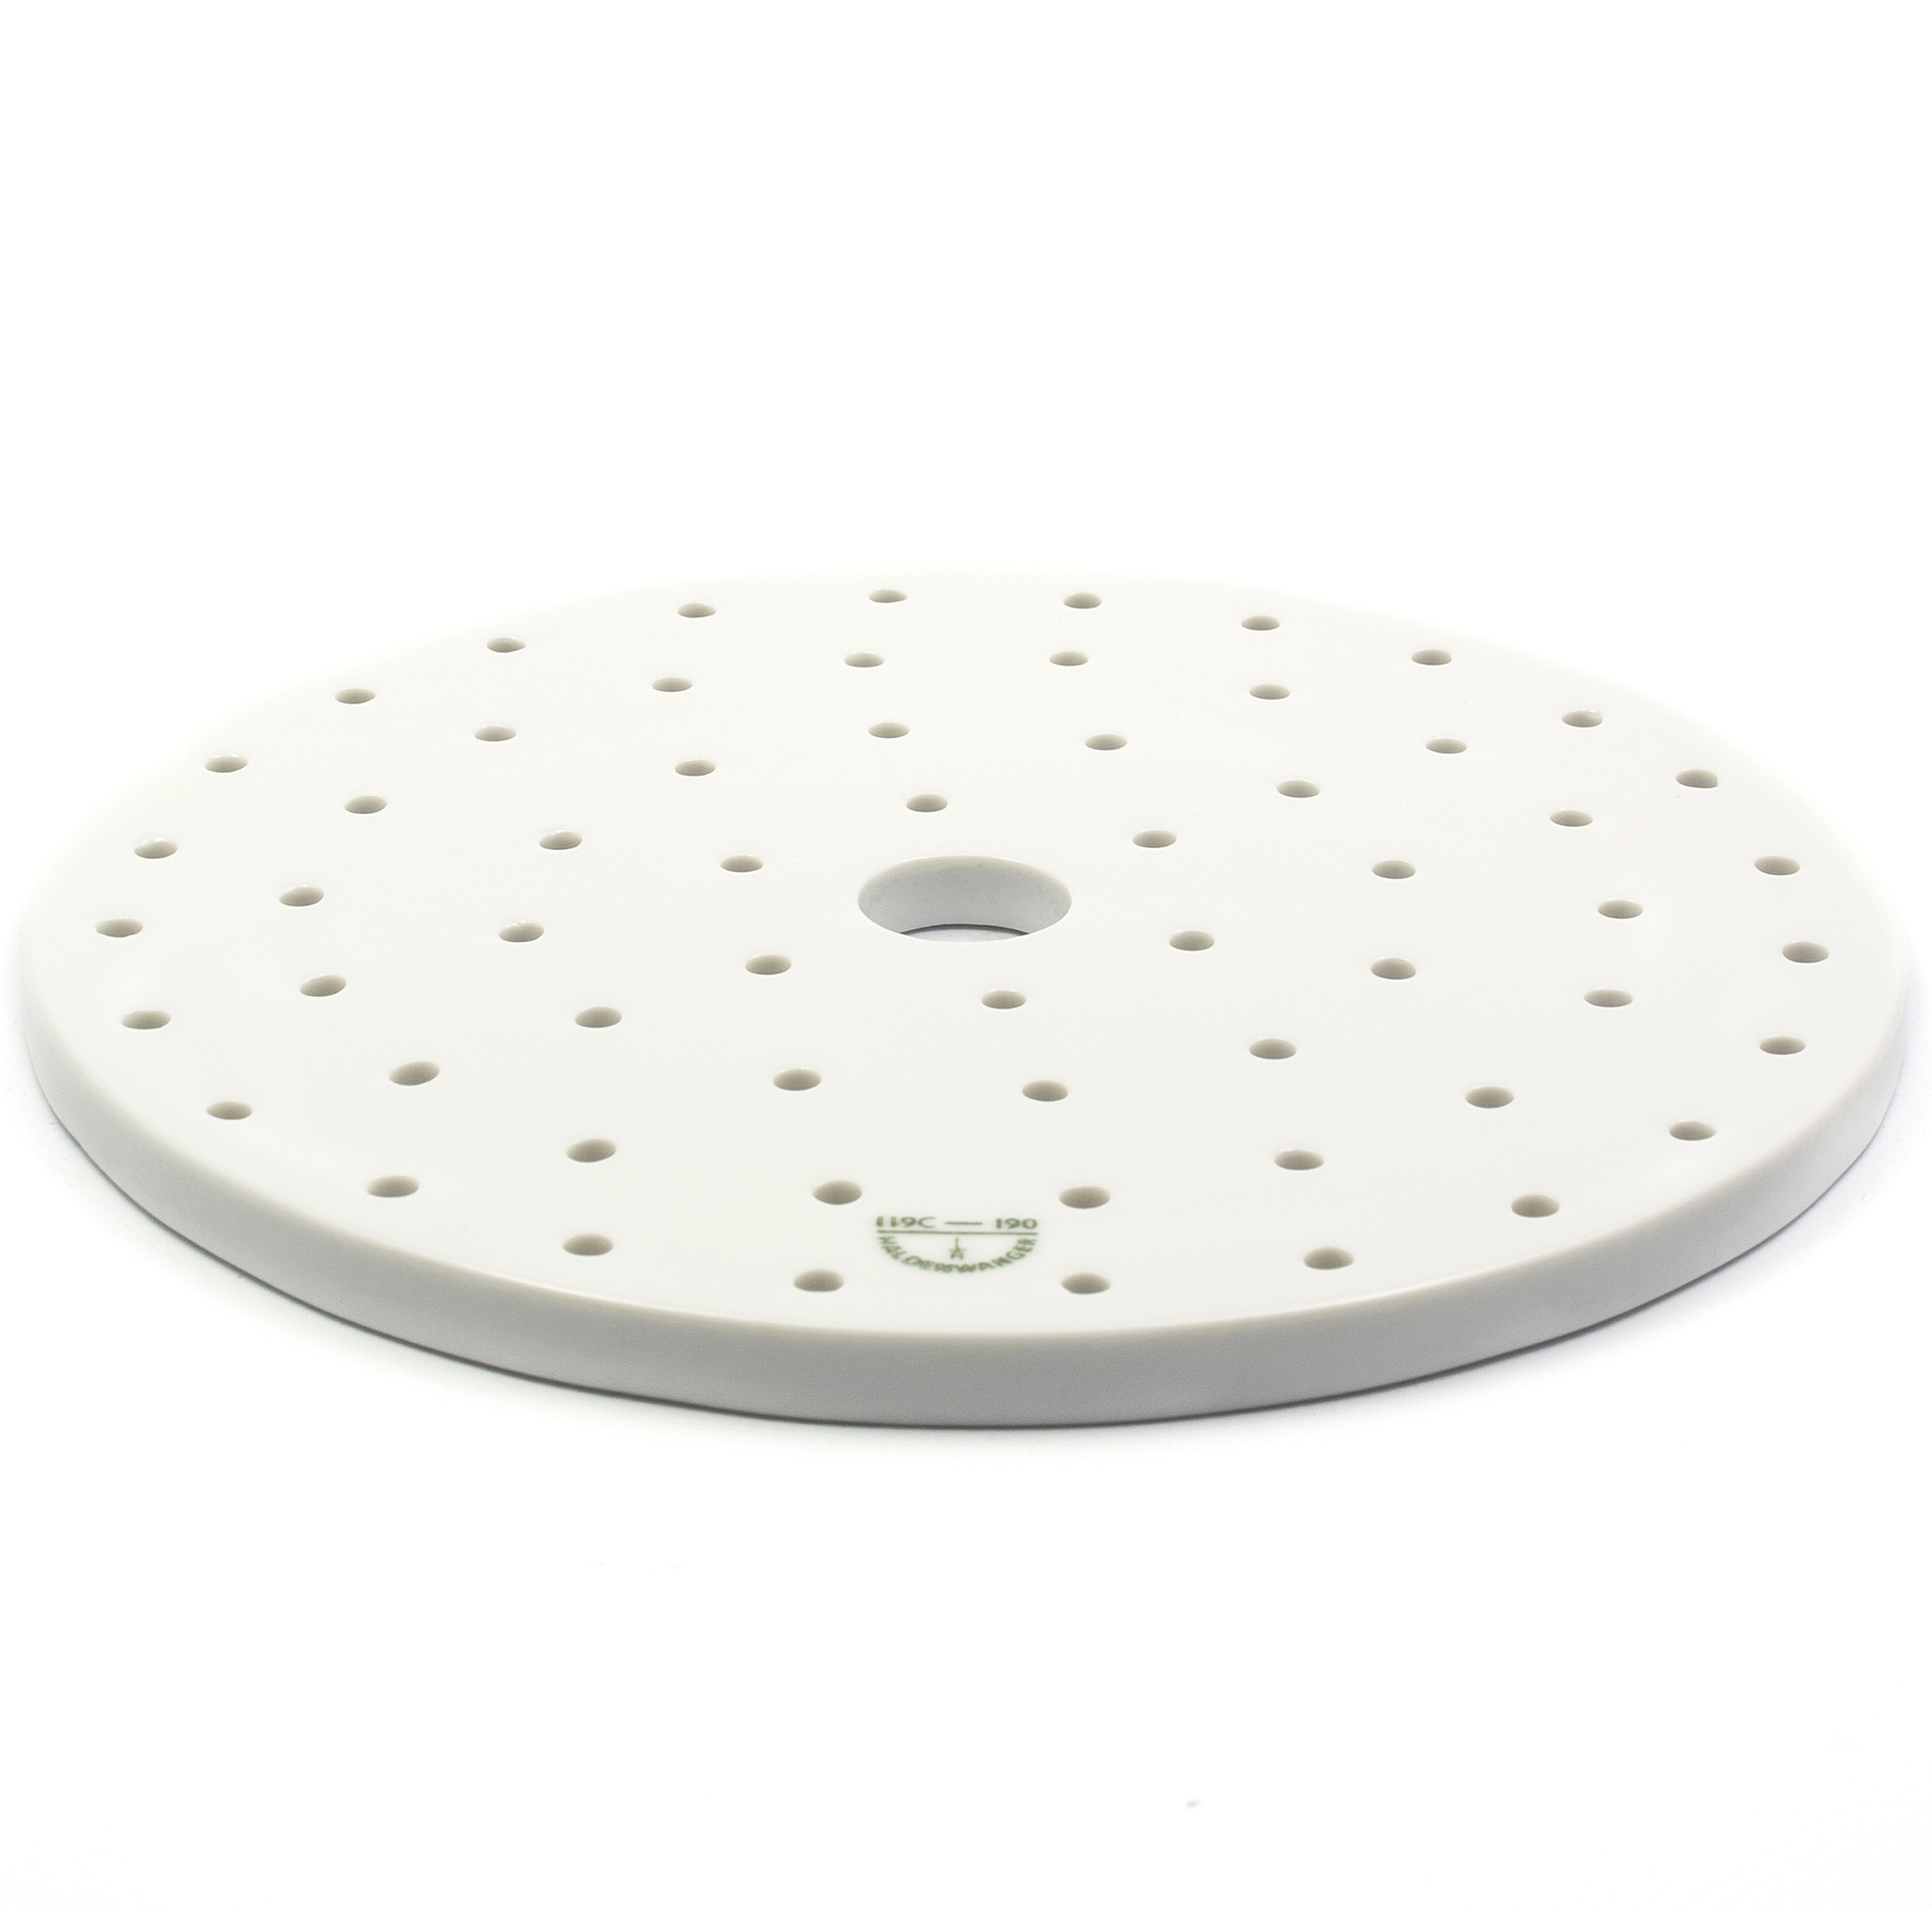 ABML 10653671 Desiccator plate (porcelain) - Ø 235mm